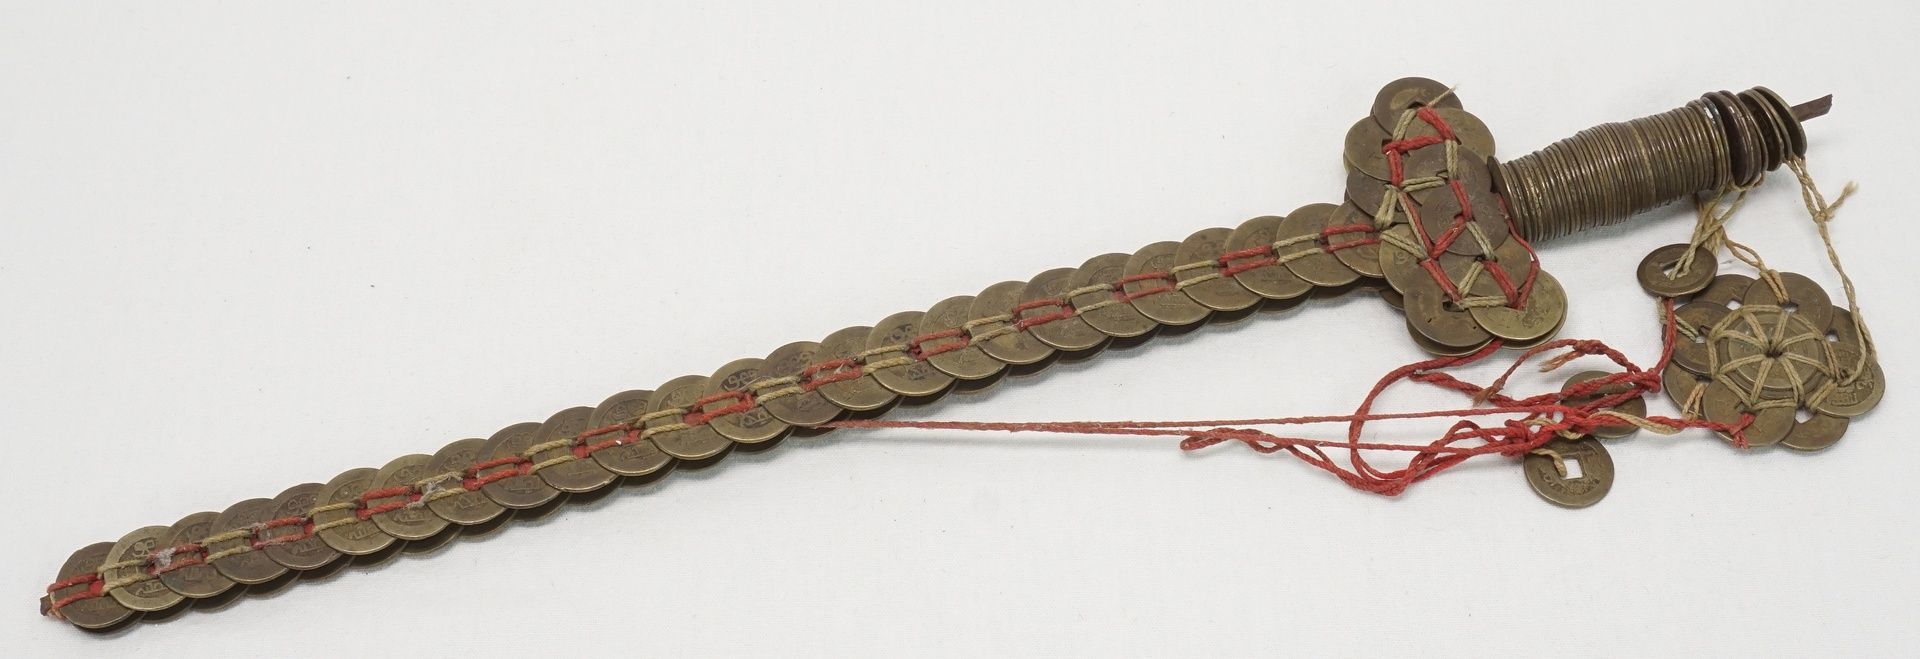 Geisterschwert / Käsch-Schwert, China, 19. Jh.Münzen der Qing-Dynastie (1644 - 1911) auf - Image 2 of 2